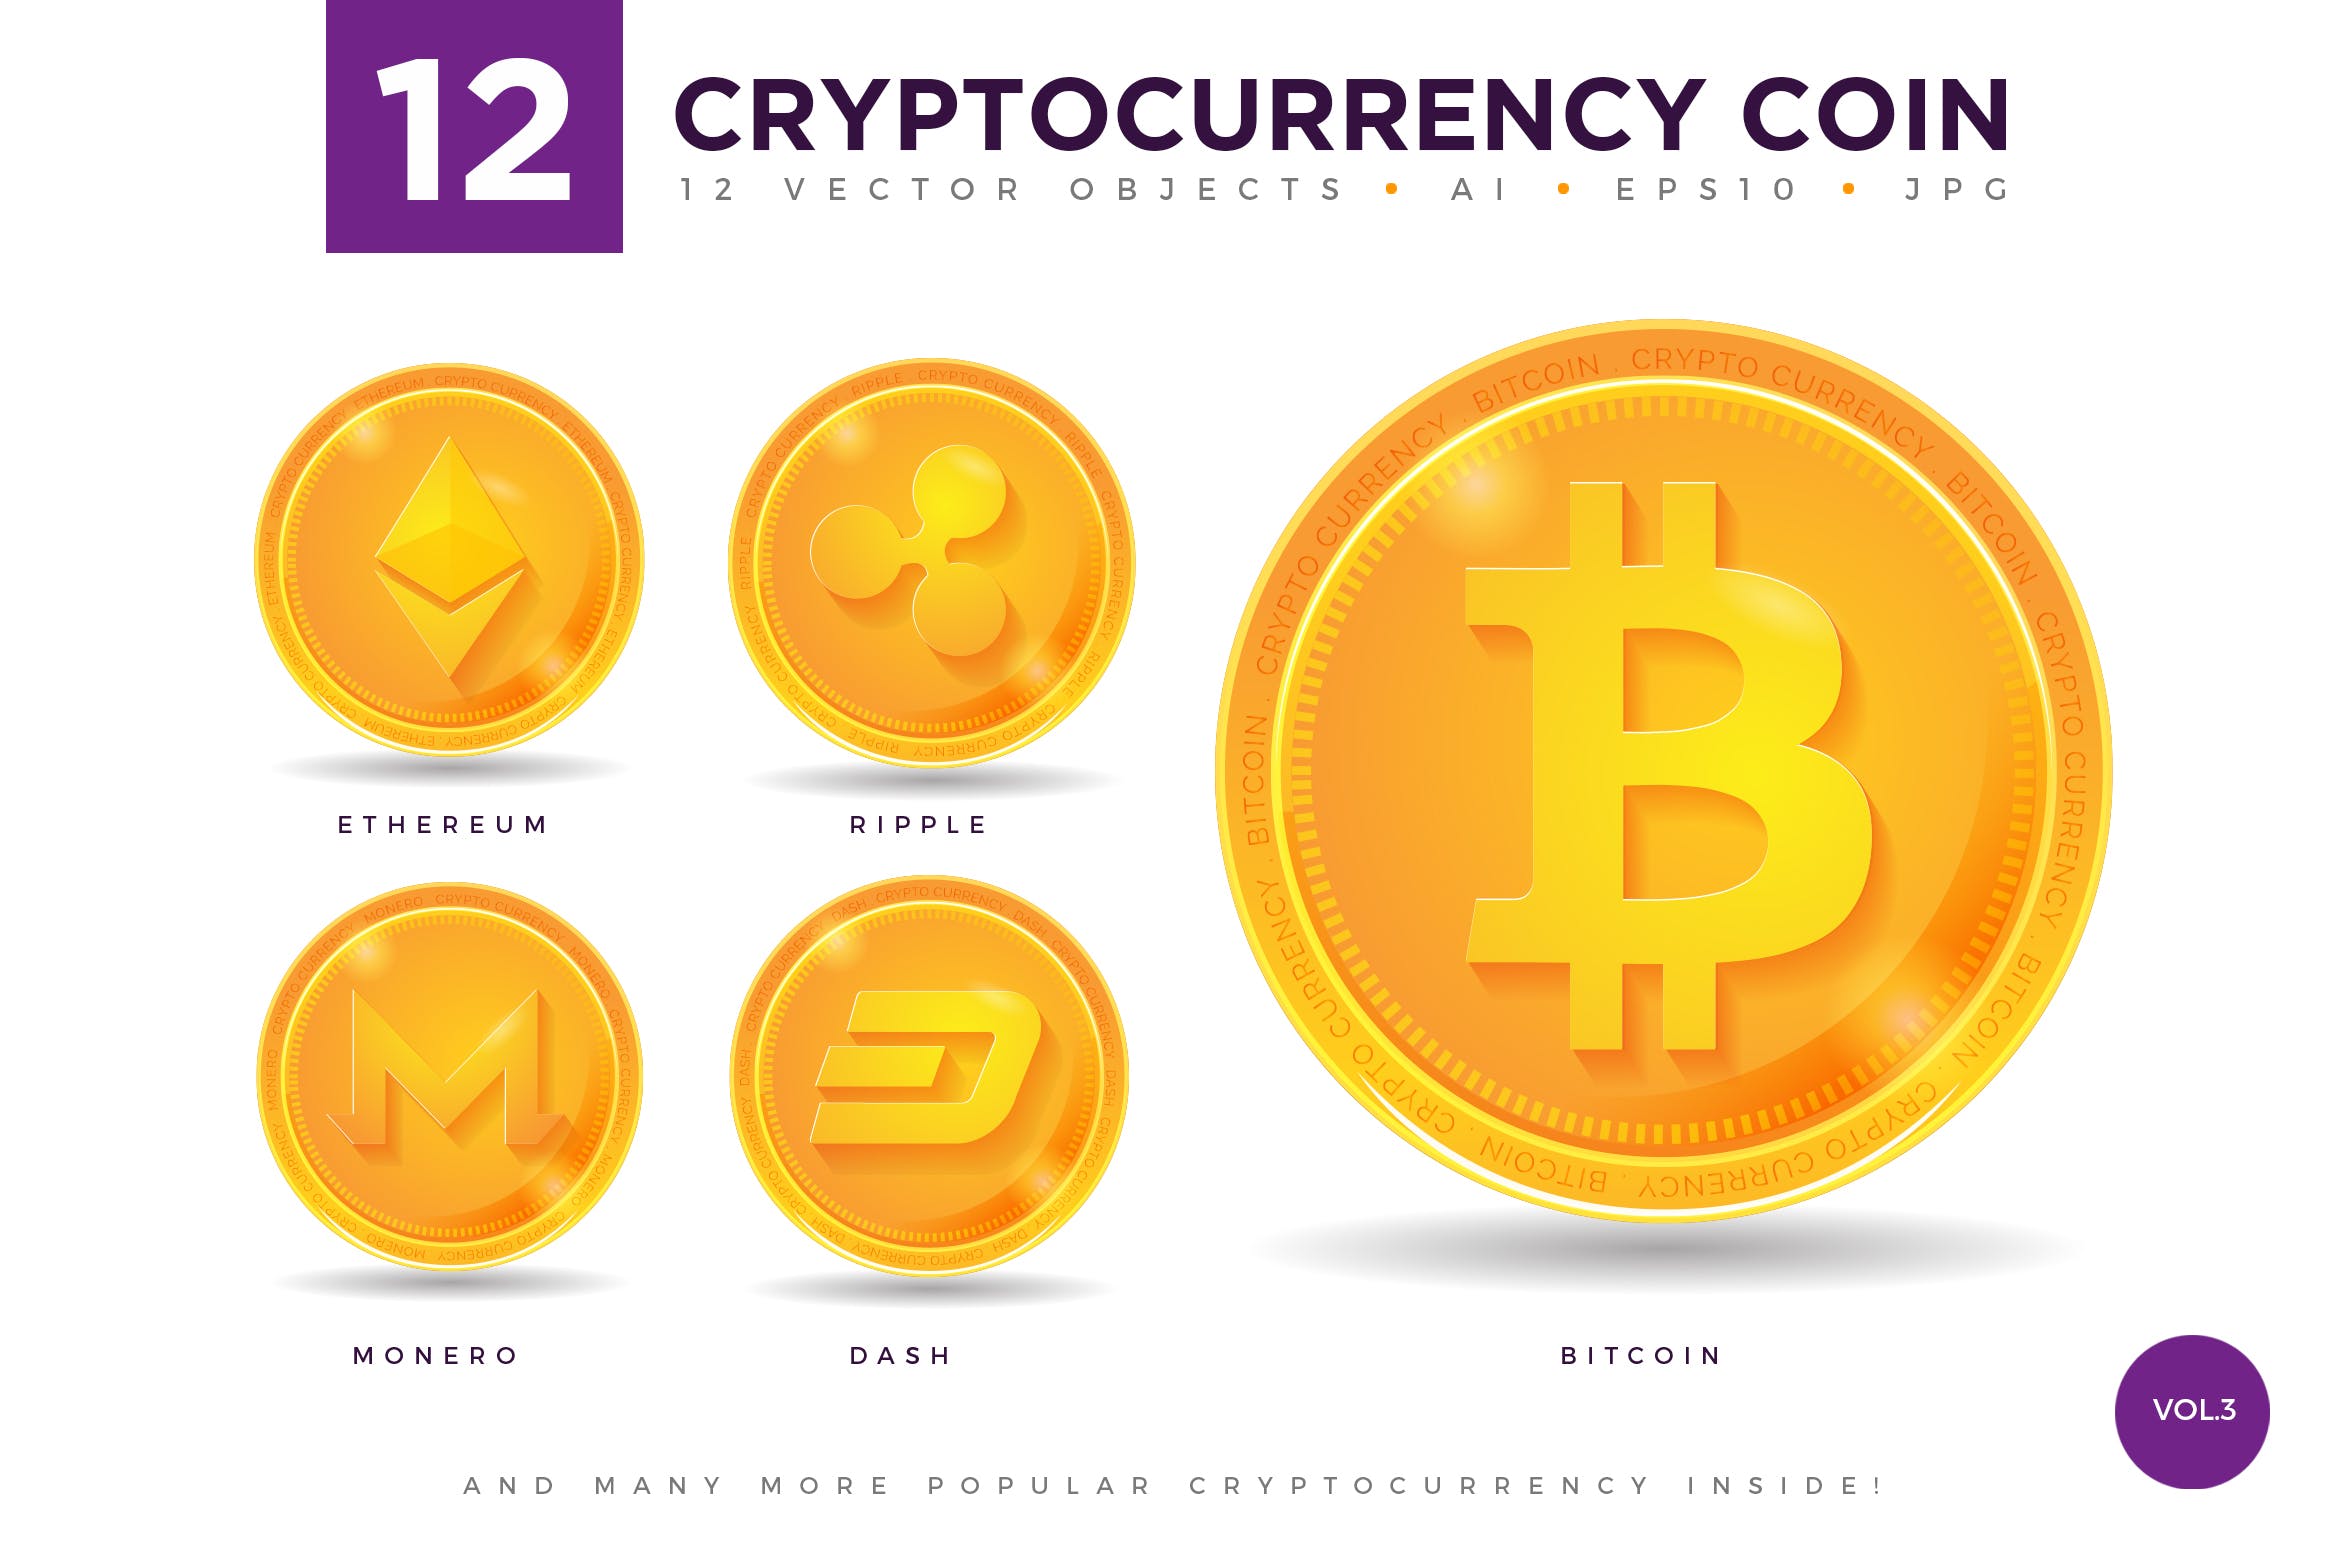 12枚加密货币主题硬币形状矢量亿图网易图库精选图标合集v3 12 Crypto Currency Coin Vector Illustration Set 3插图